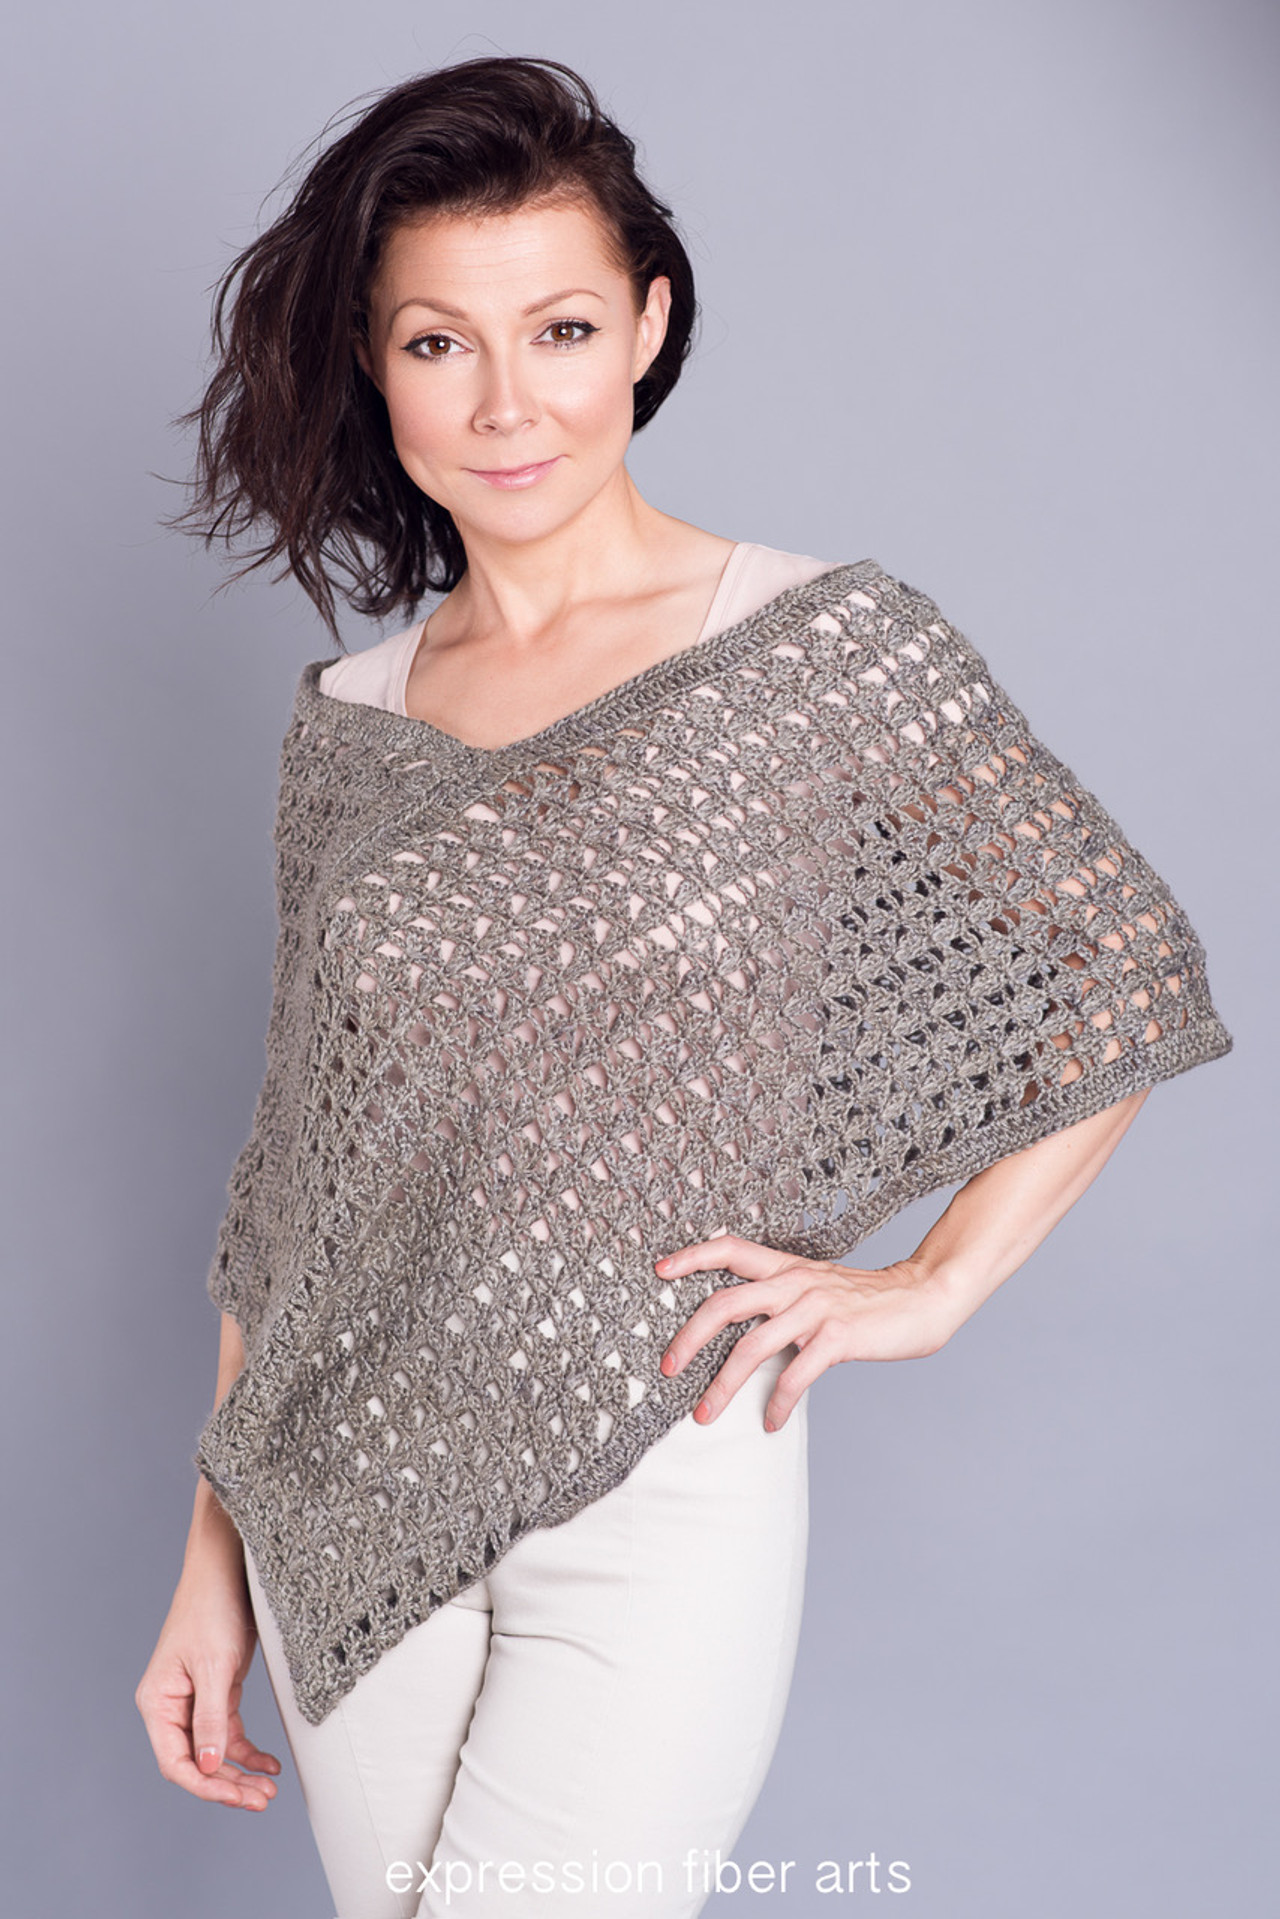 Luxurious Lap Blanket Crochet Pattern